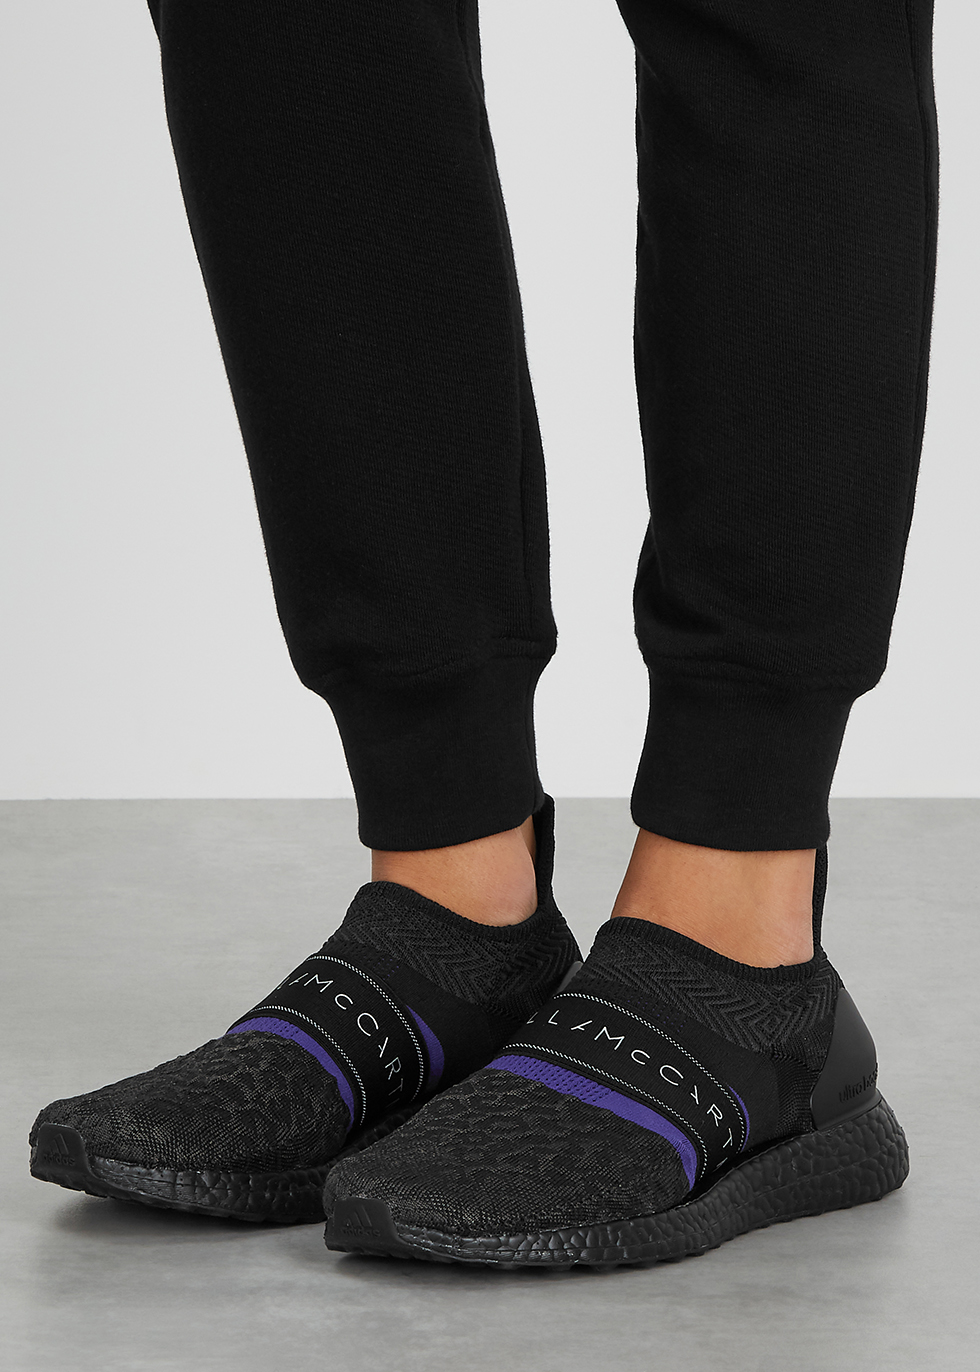 women's adidas by stella mccartney ultraboost x 3d shoes